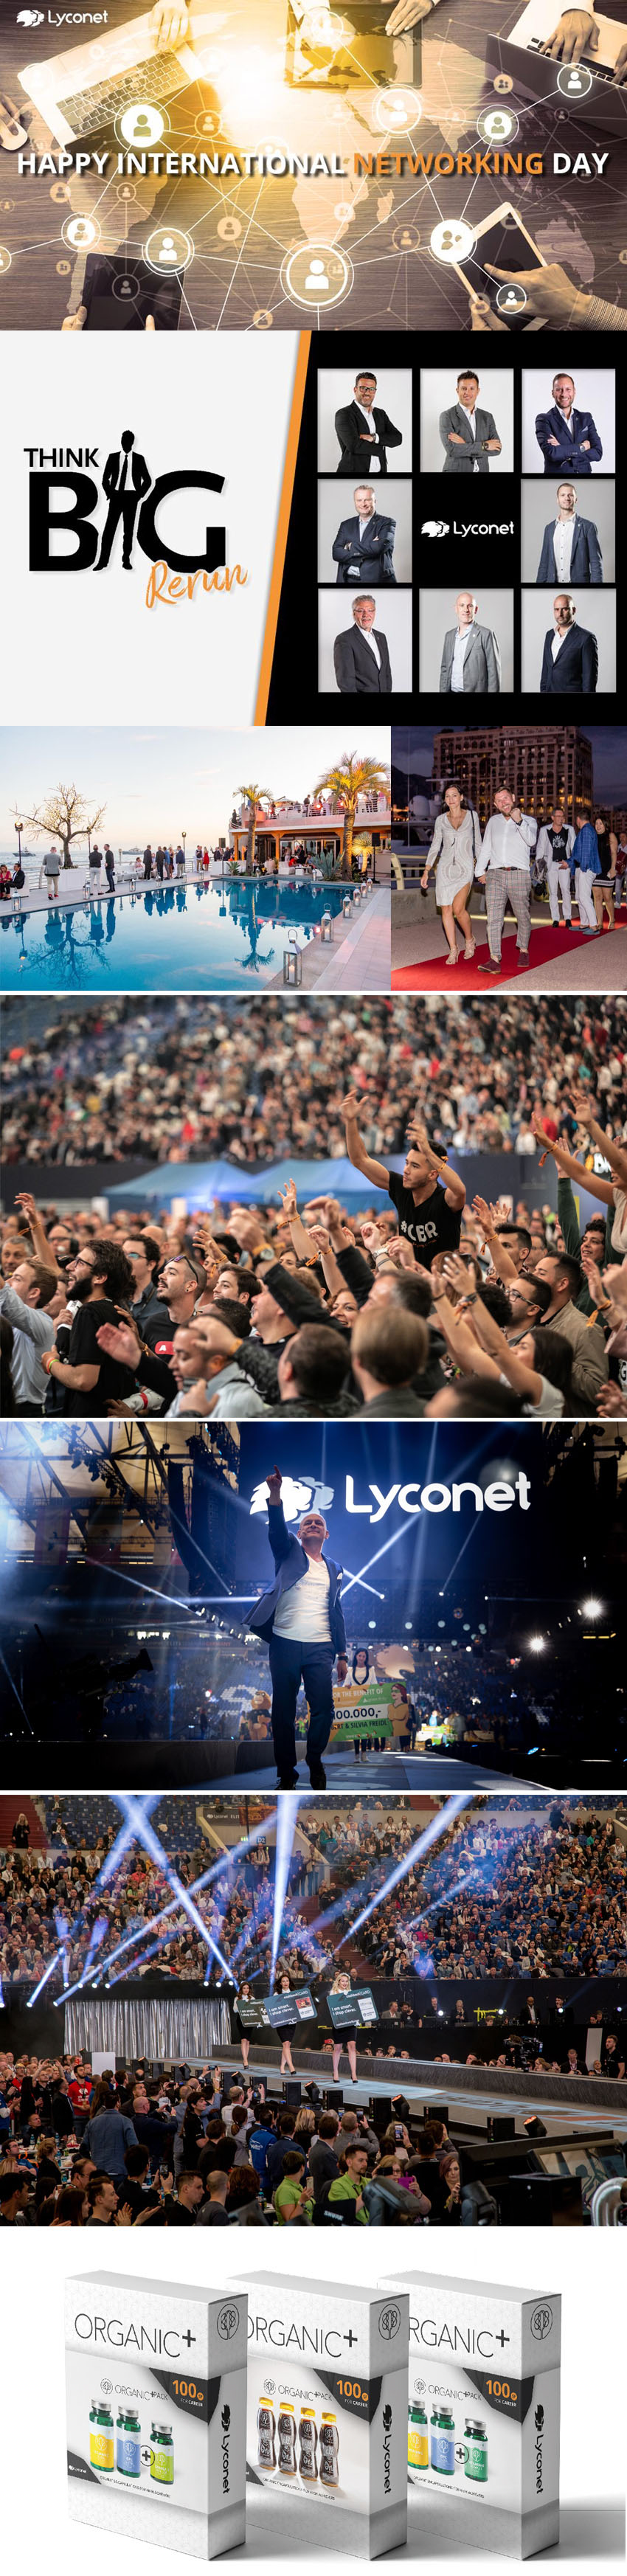 LycoNet